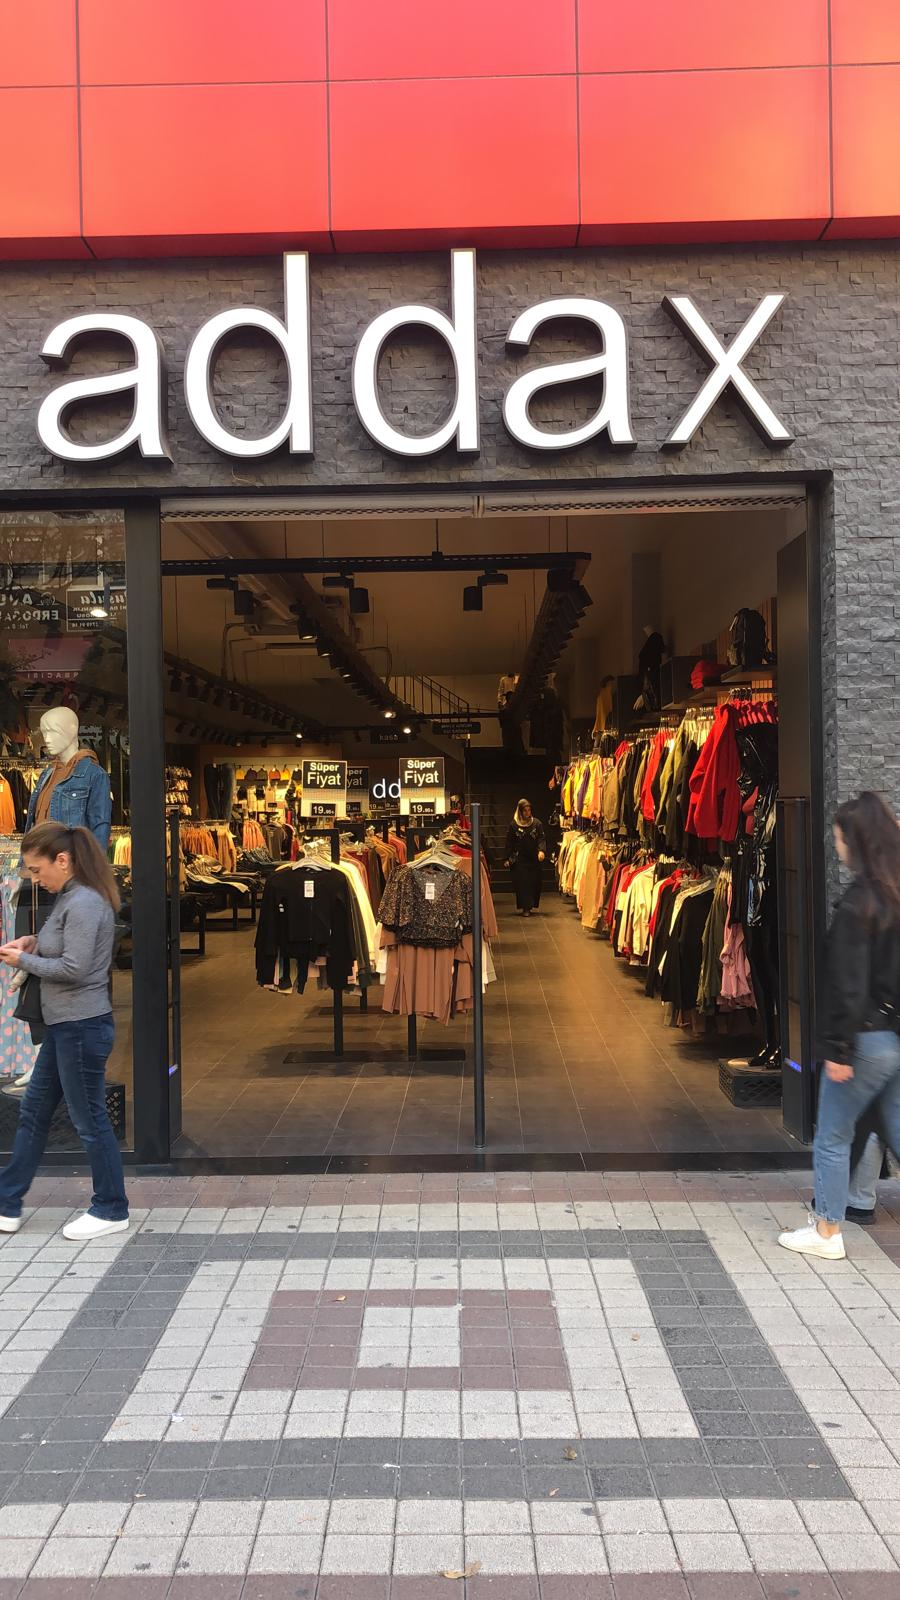 Addax - 11